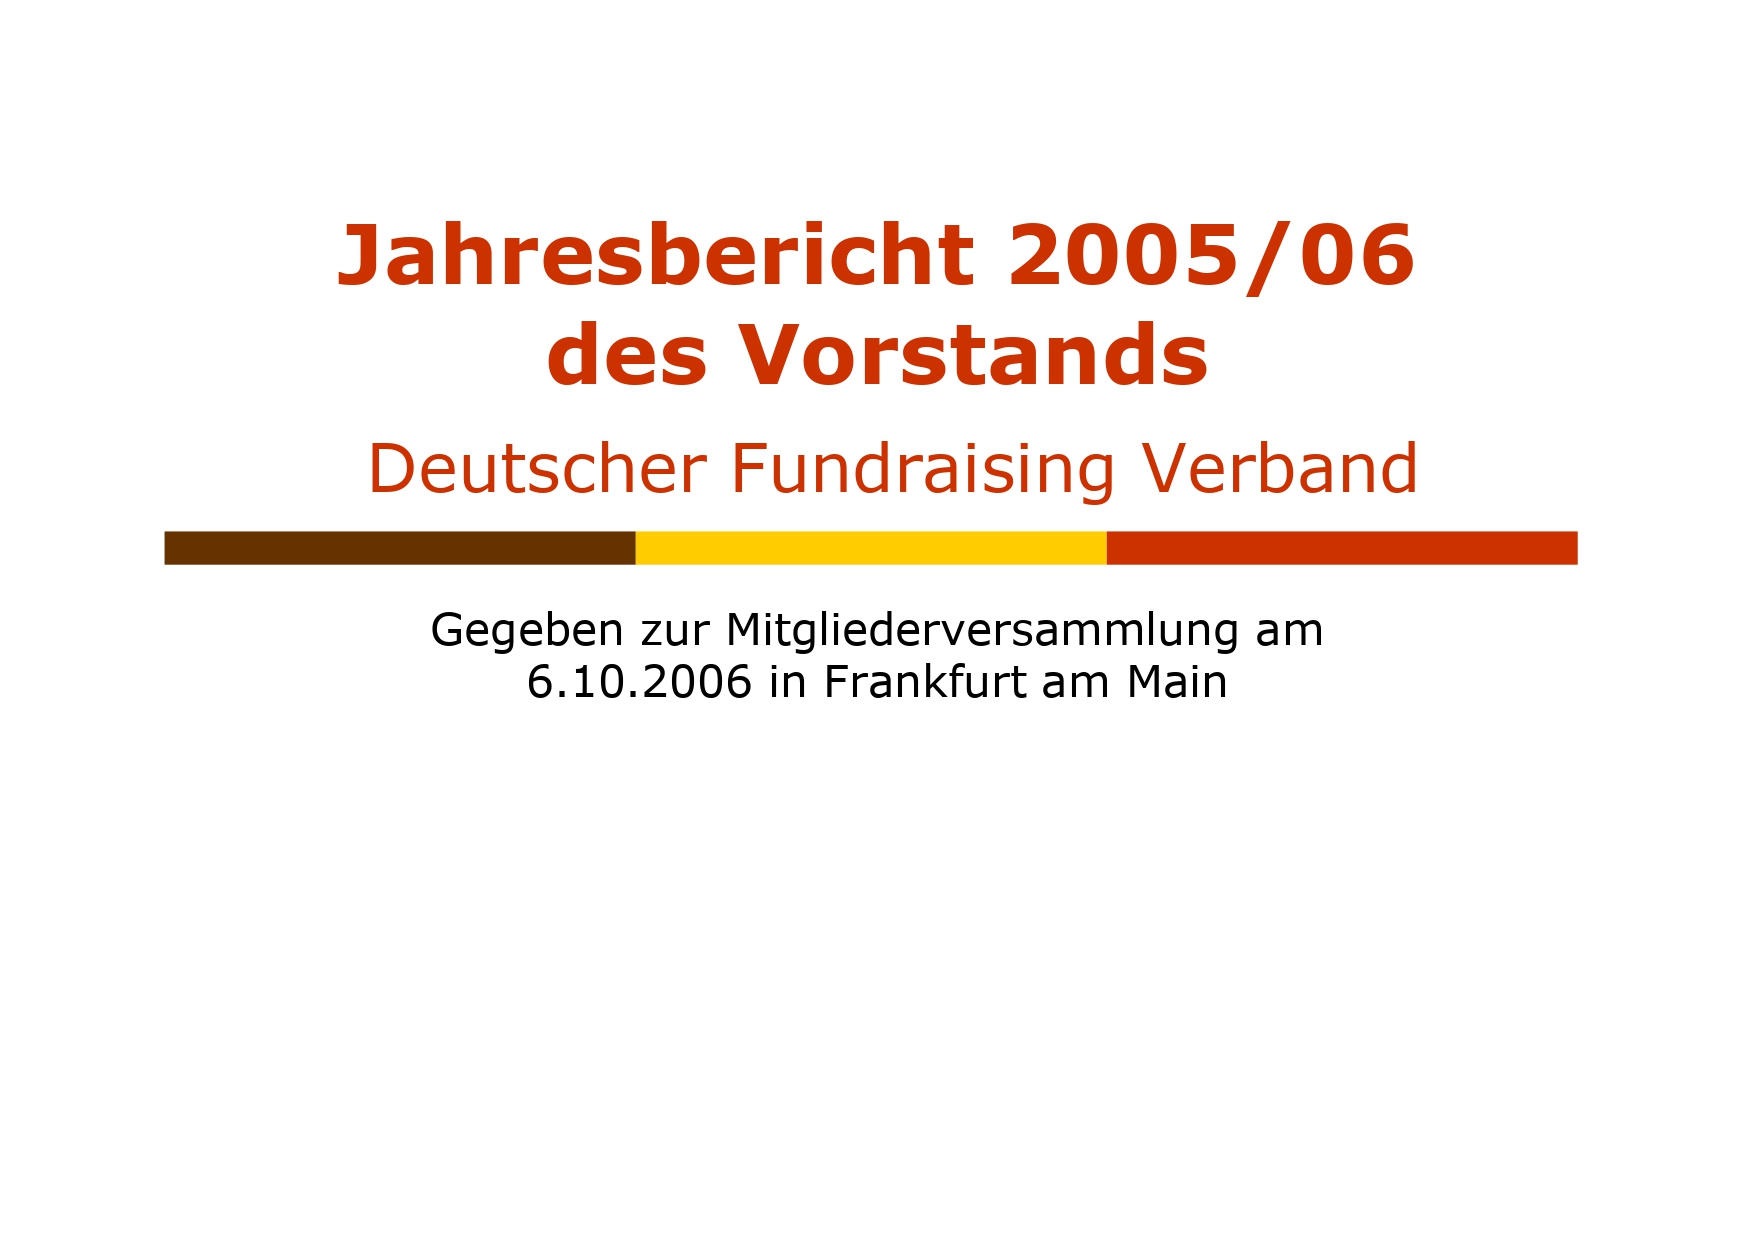 DFRV Jahresbericht 2005